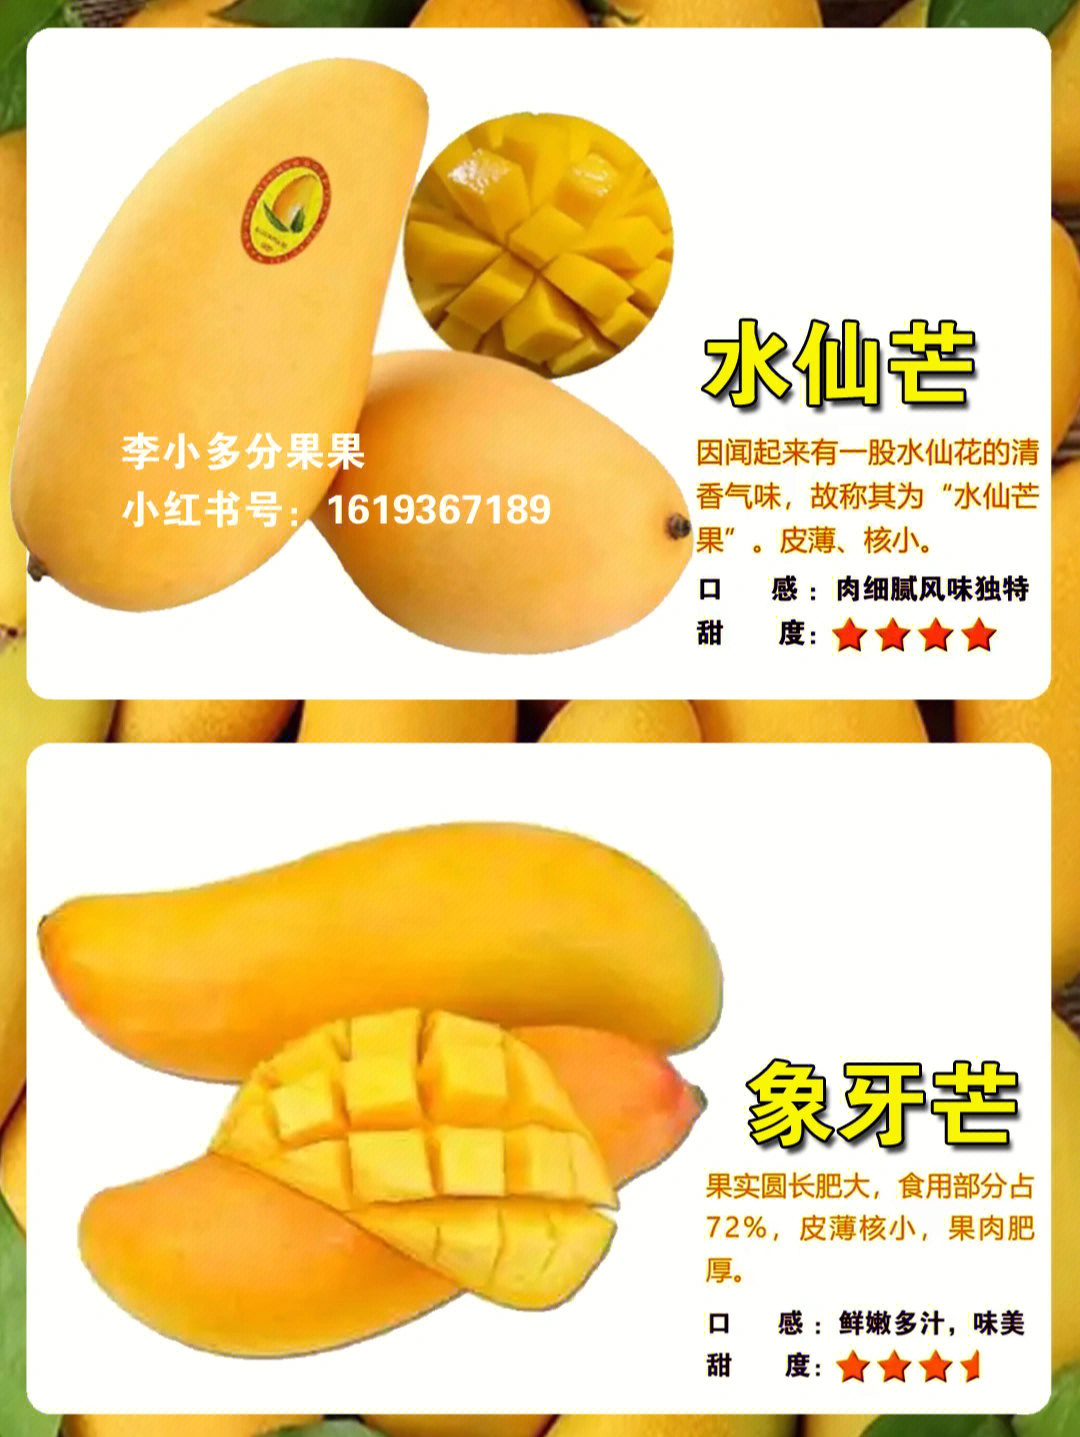 芒果的种类及口味